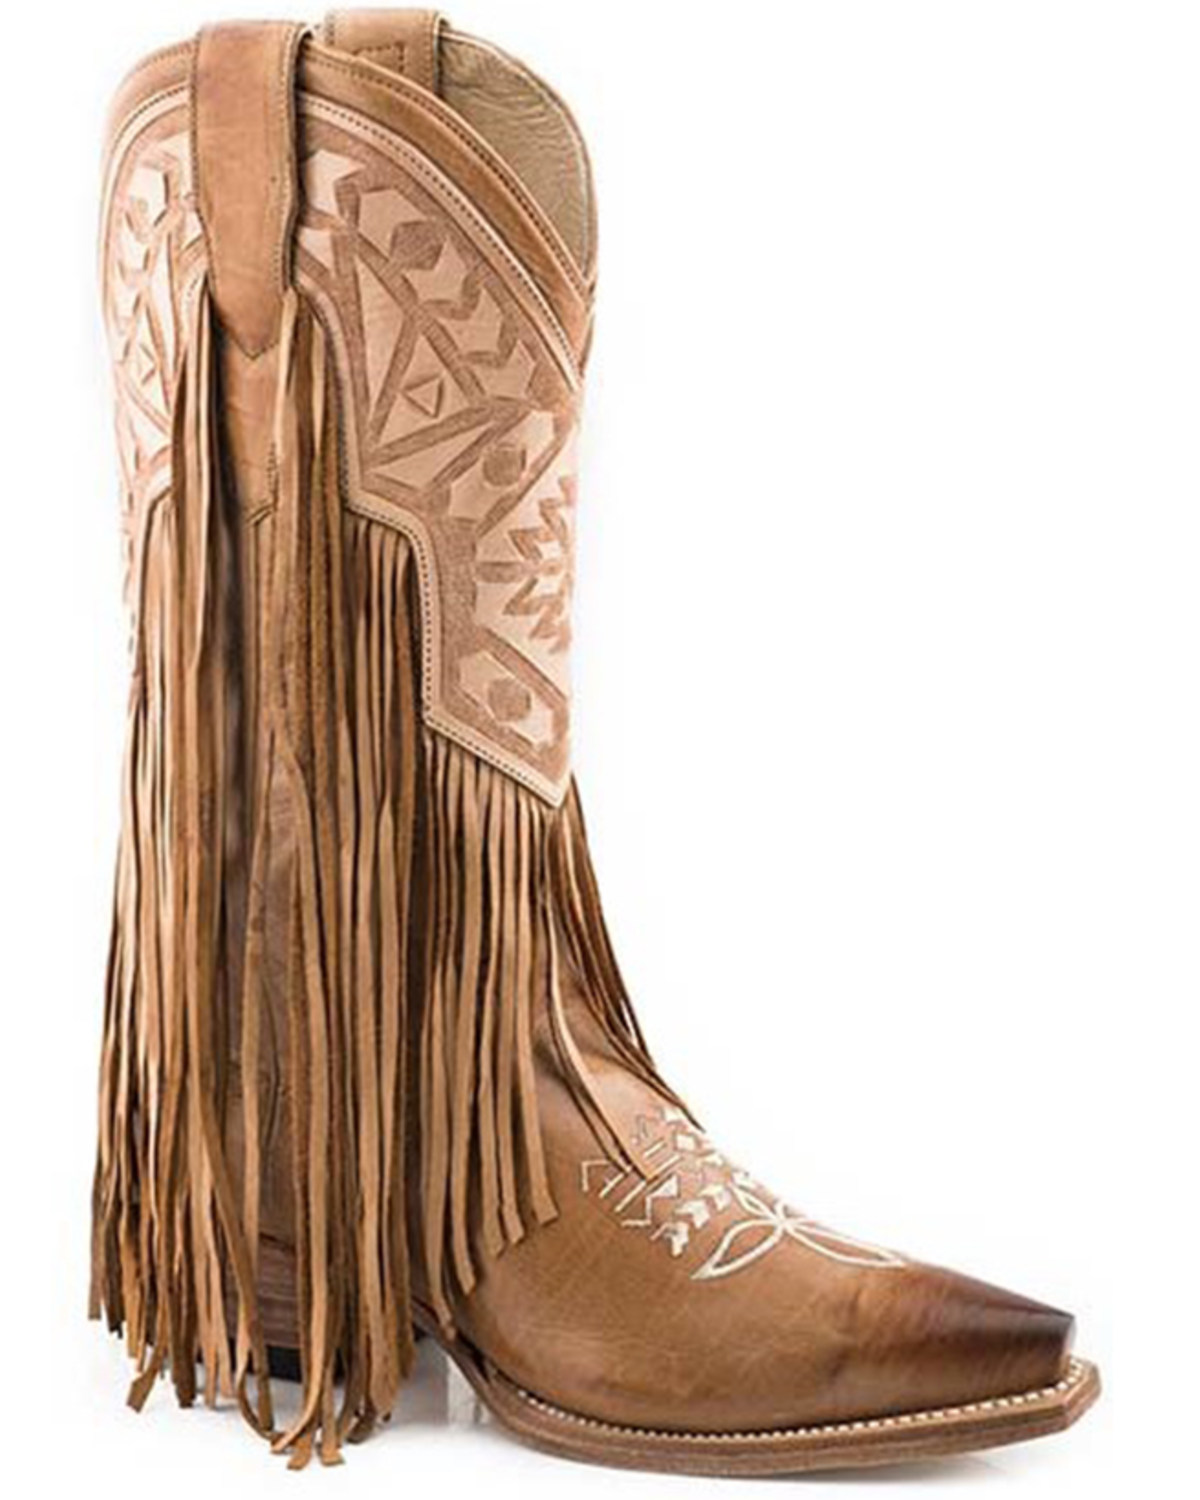 Stetson Women's Sloane Fringe Western Boots - Snip Toe